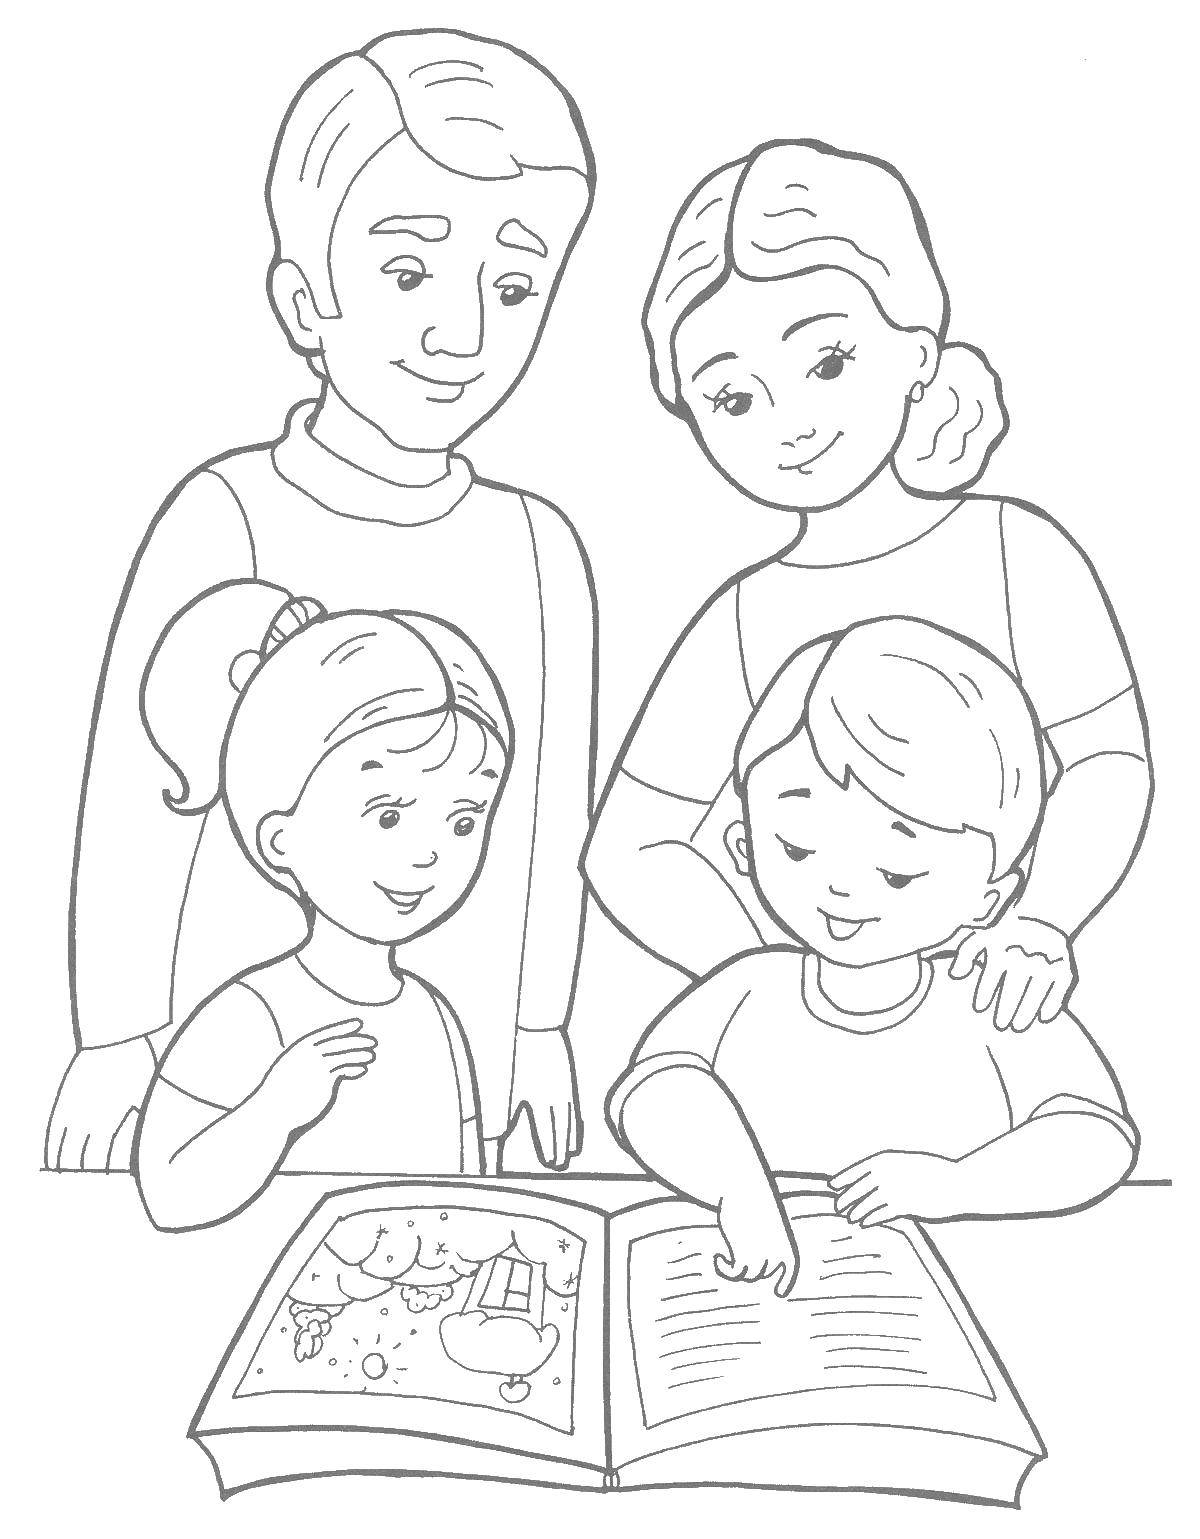 Название: Раскраска Семья и книга. Категория: семья. Теги: мама, папа, дети, книга.